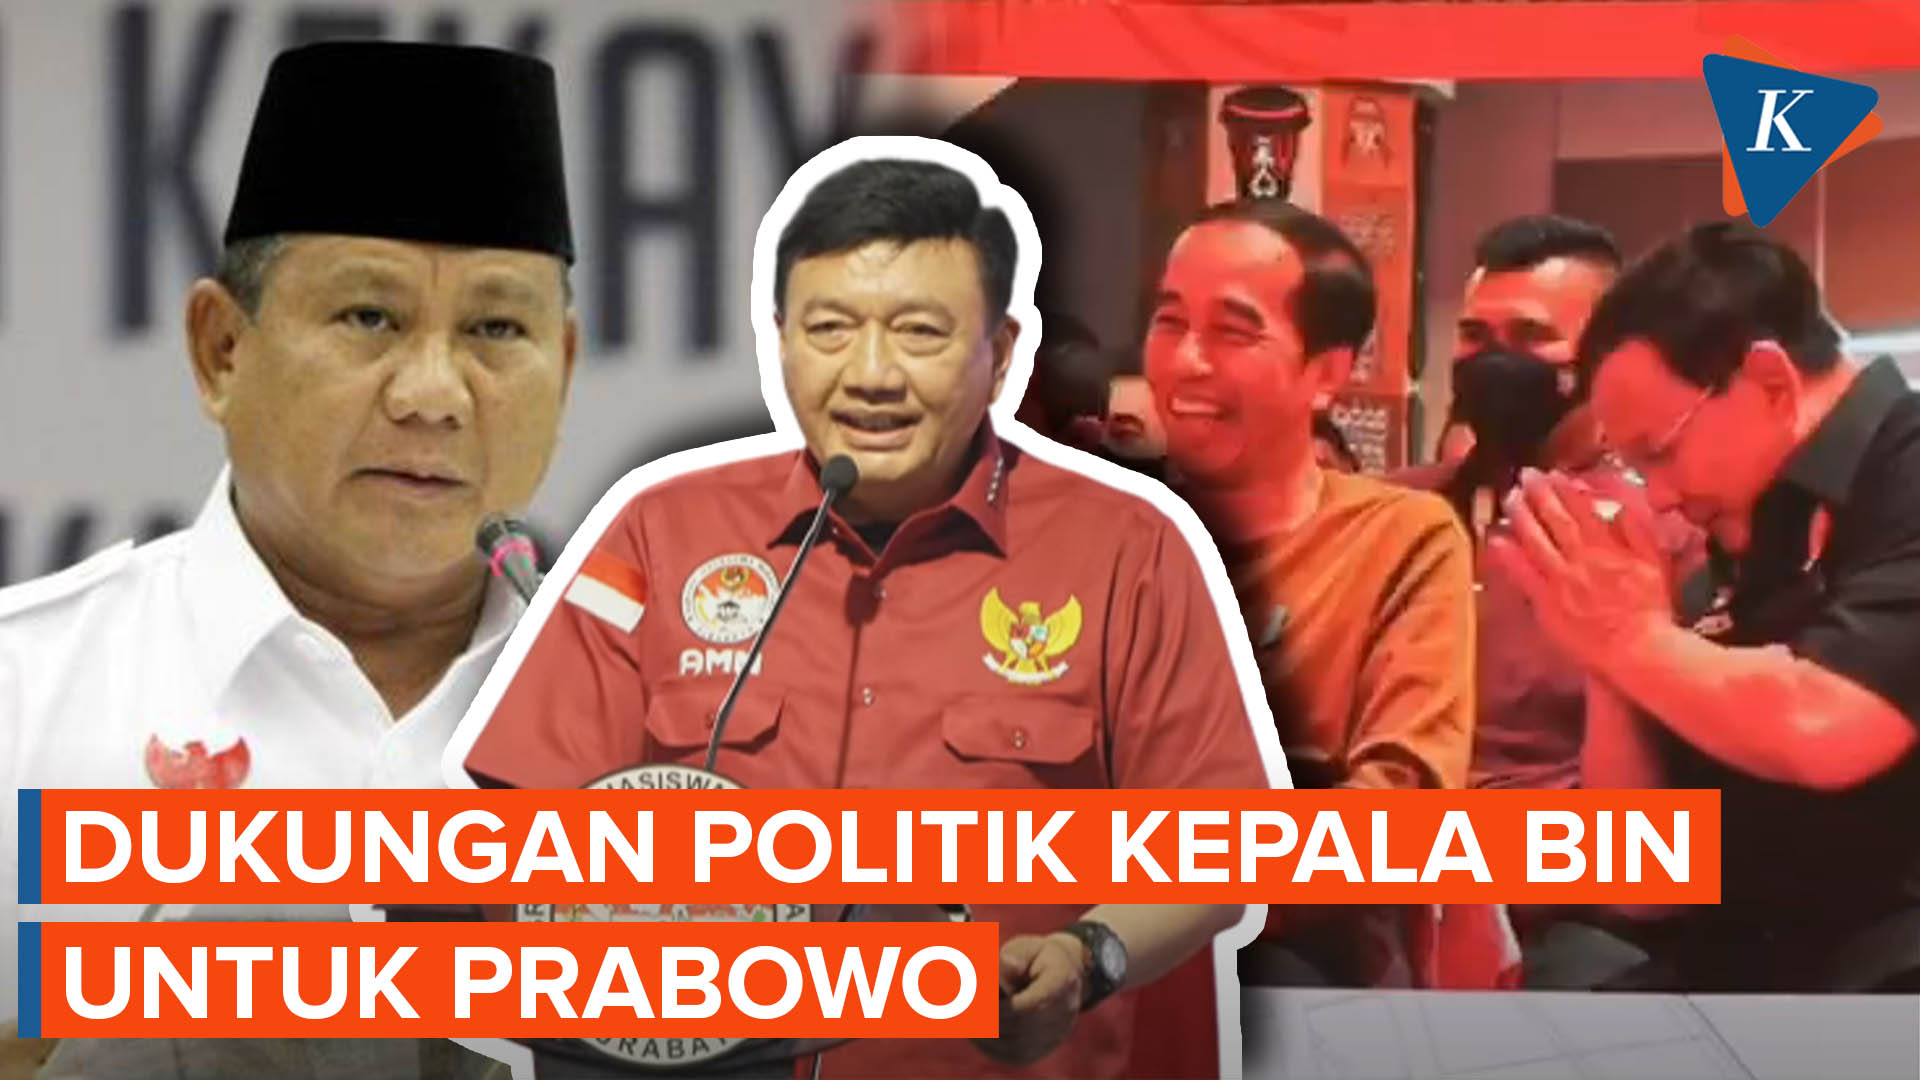 Endorsement Ala Kepala BIN, Singgung Aura Jokowi hingga Kerutan Dahi Prabowo